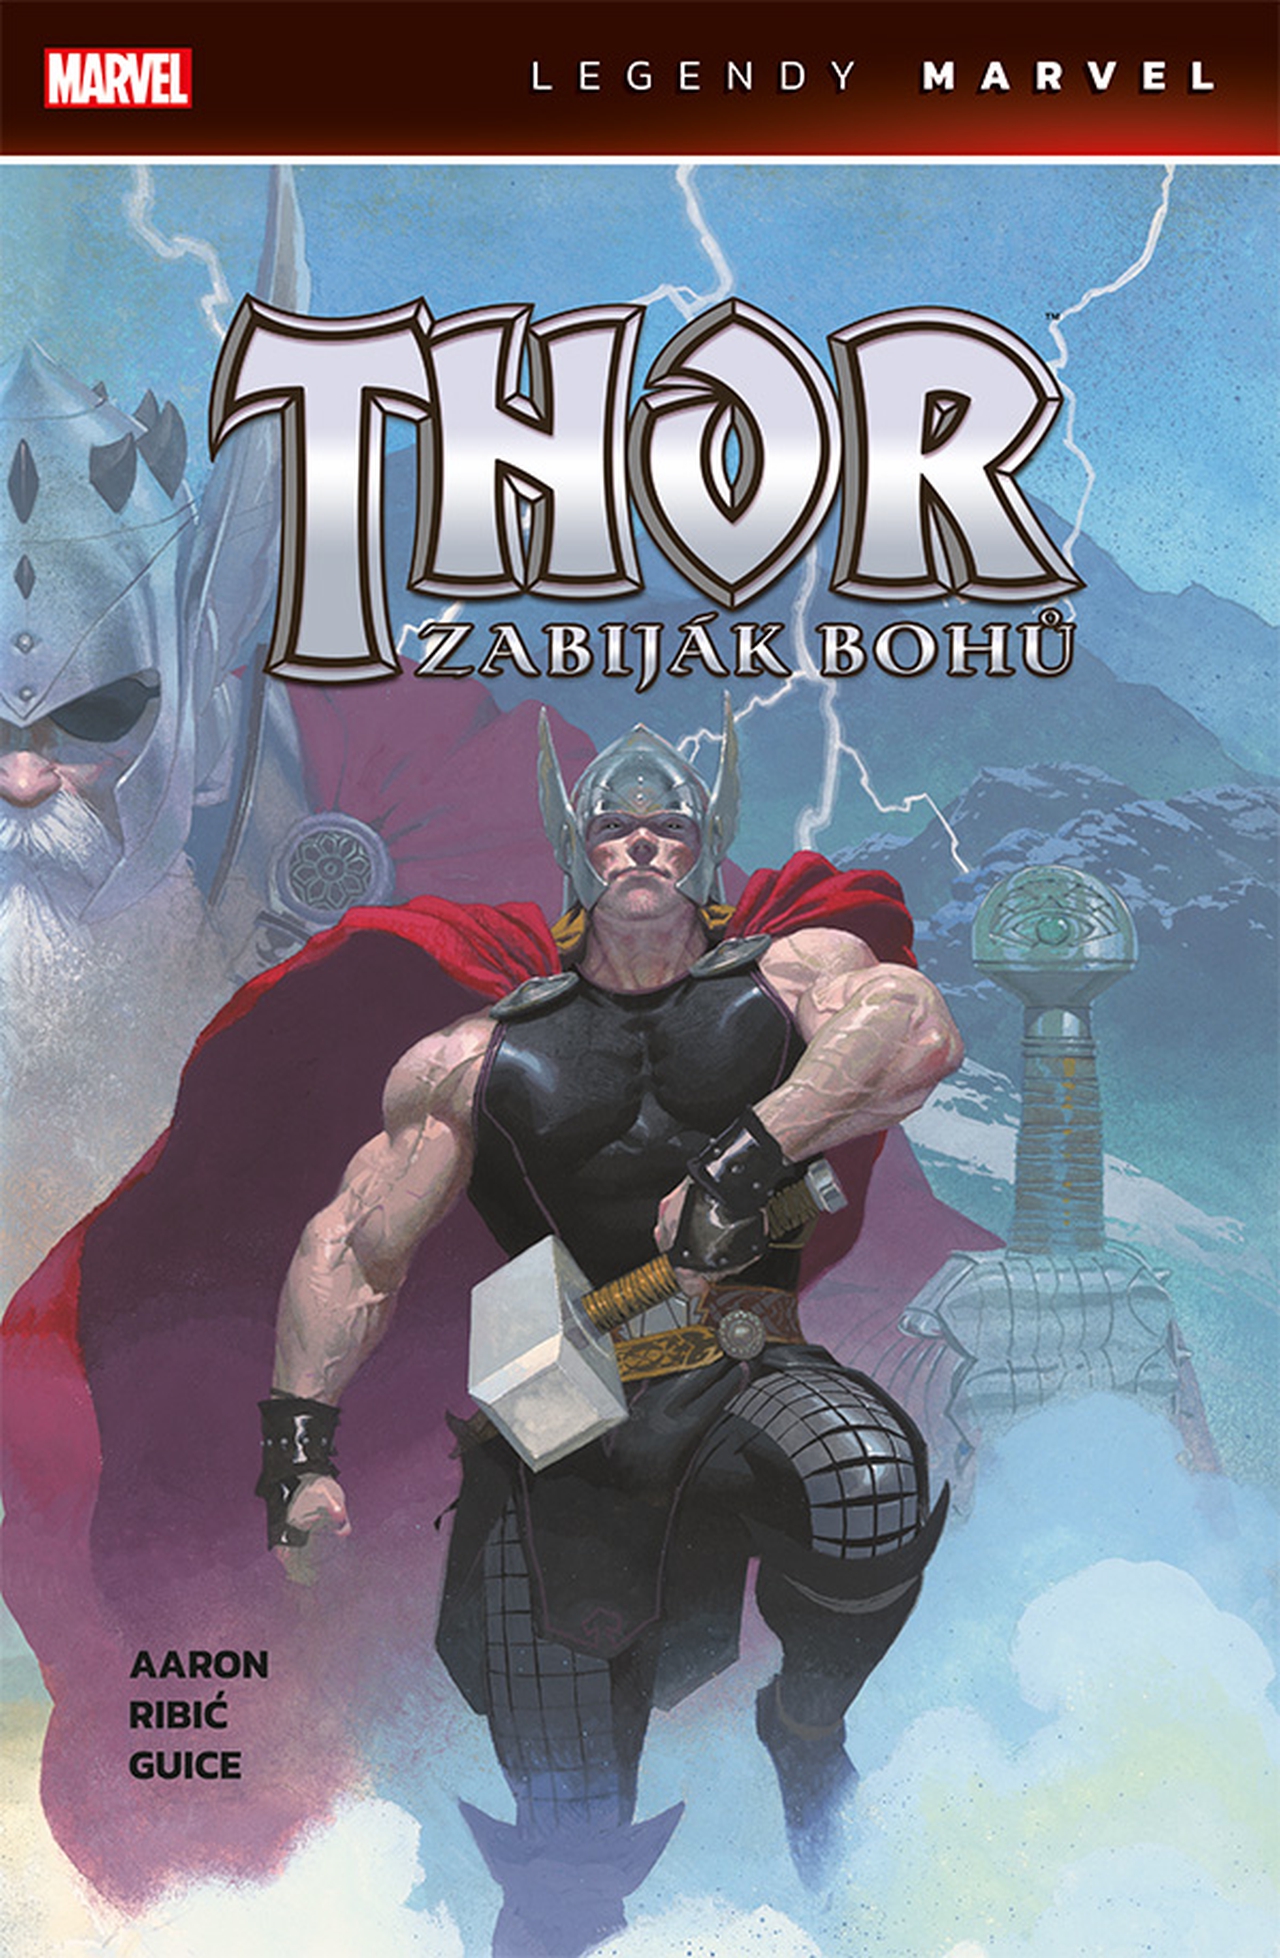 Legendy Marvel: Thor - Zabiják bohů [Aaron Jason]